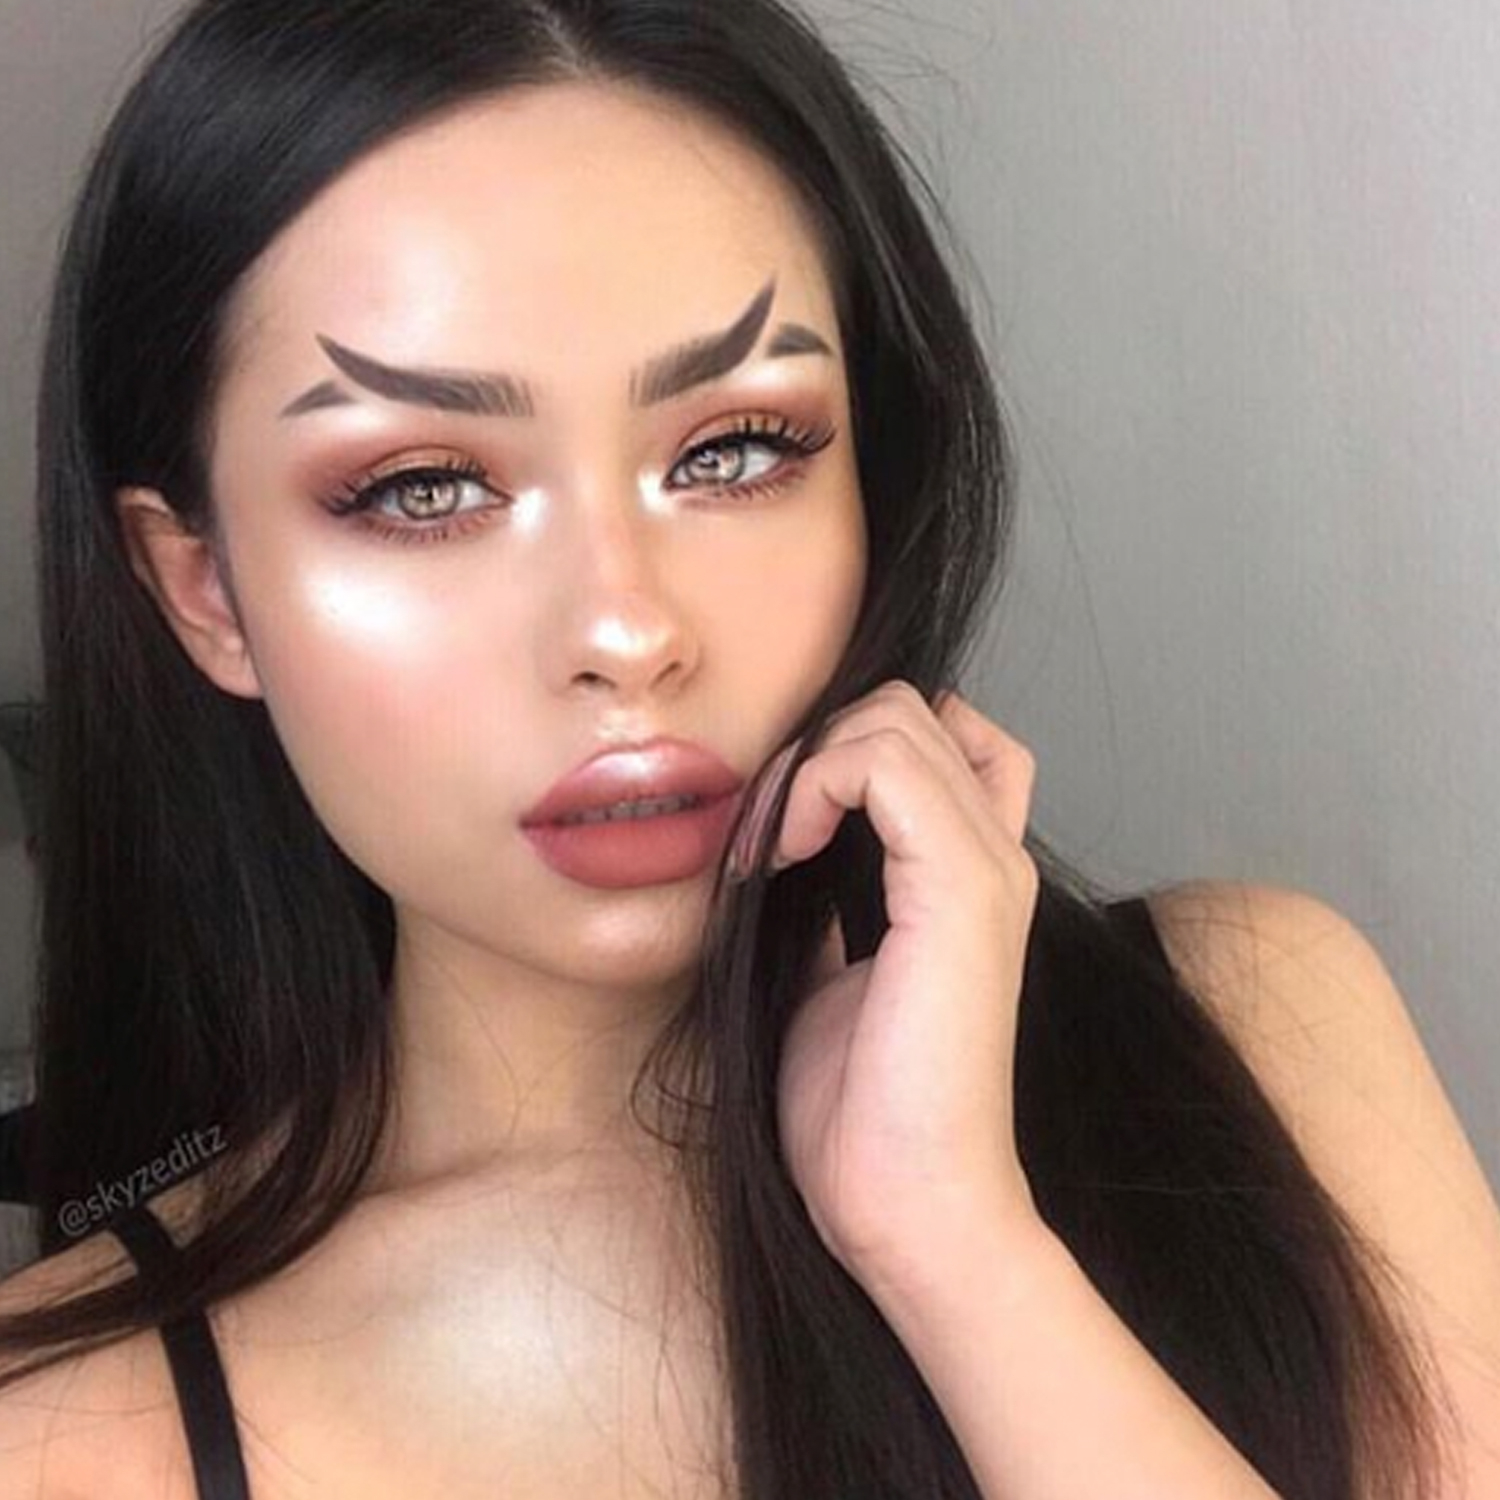 Outrageous Eye Makeup The Weirdest Beauty Trends Of 2018 Beautyheaven